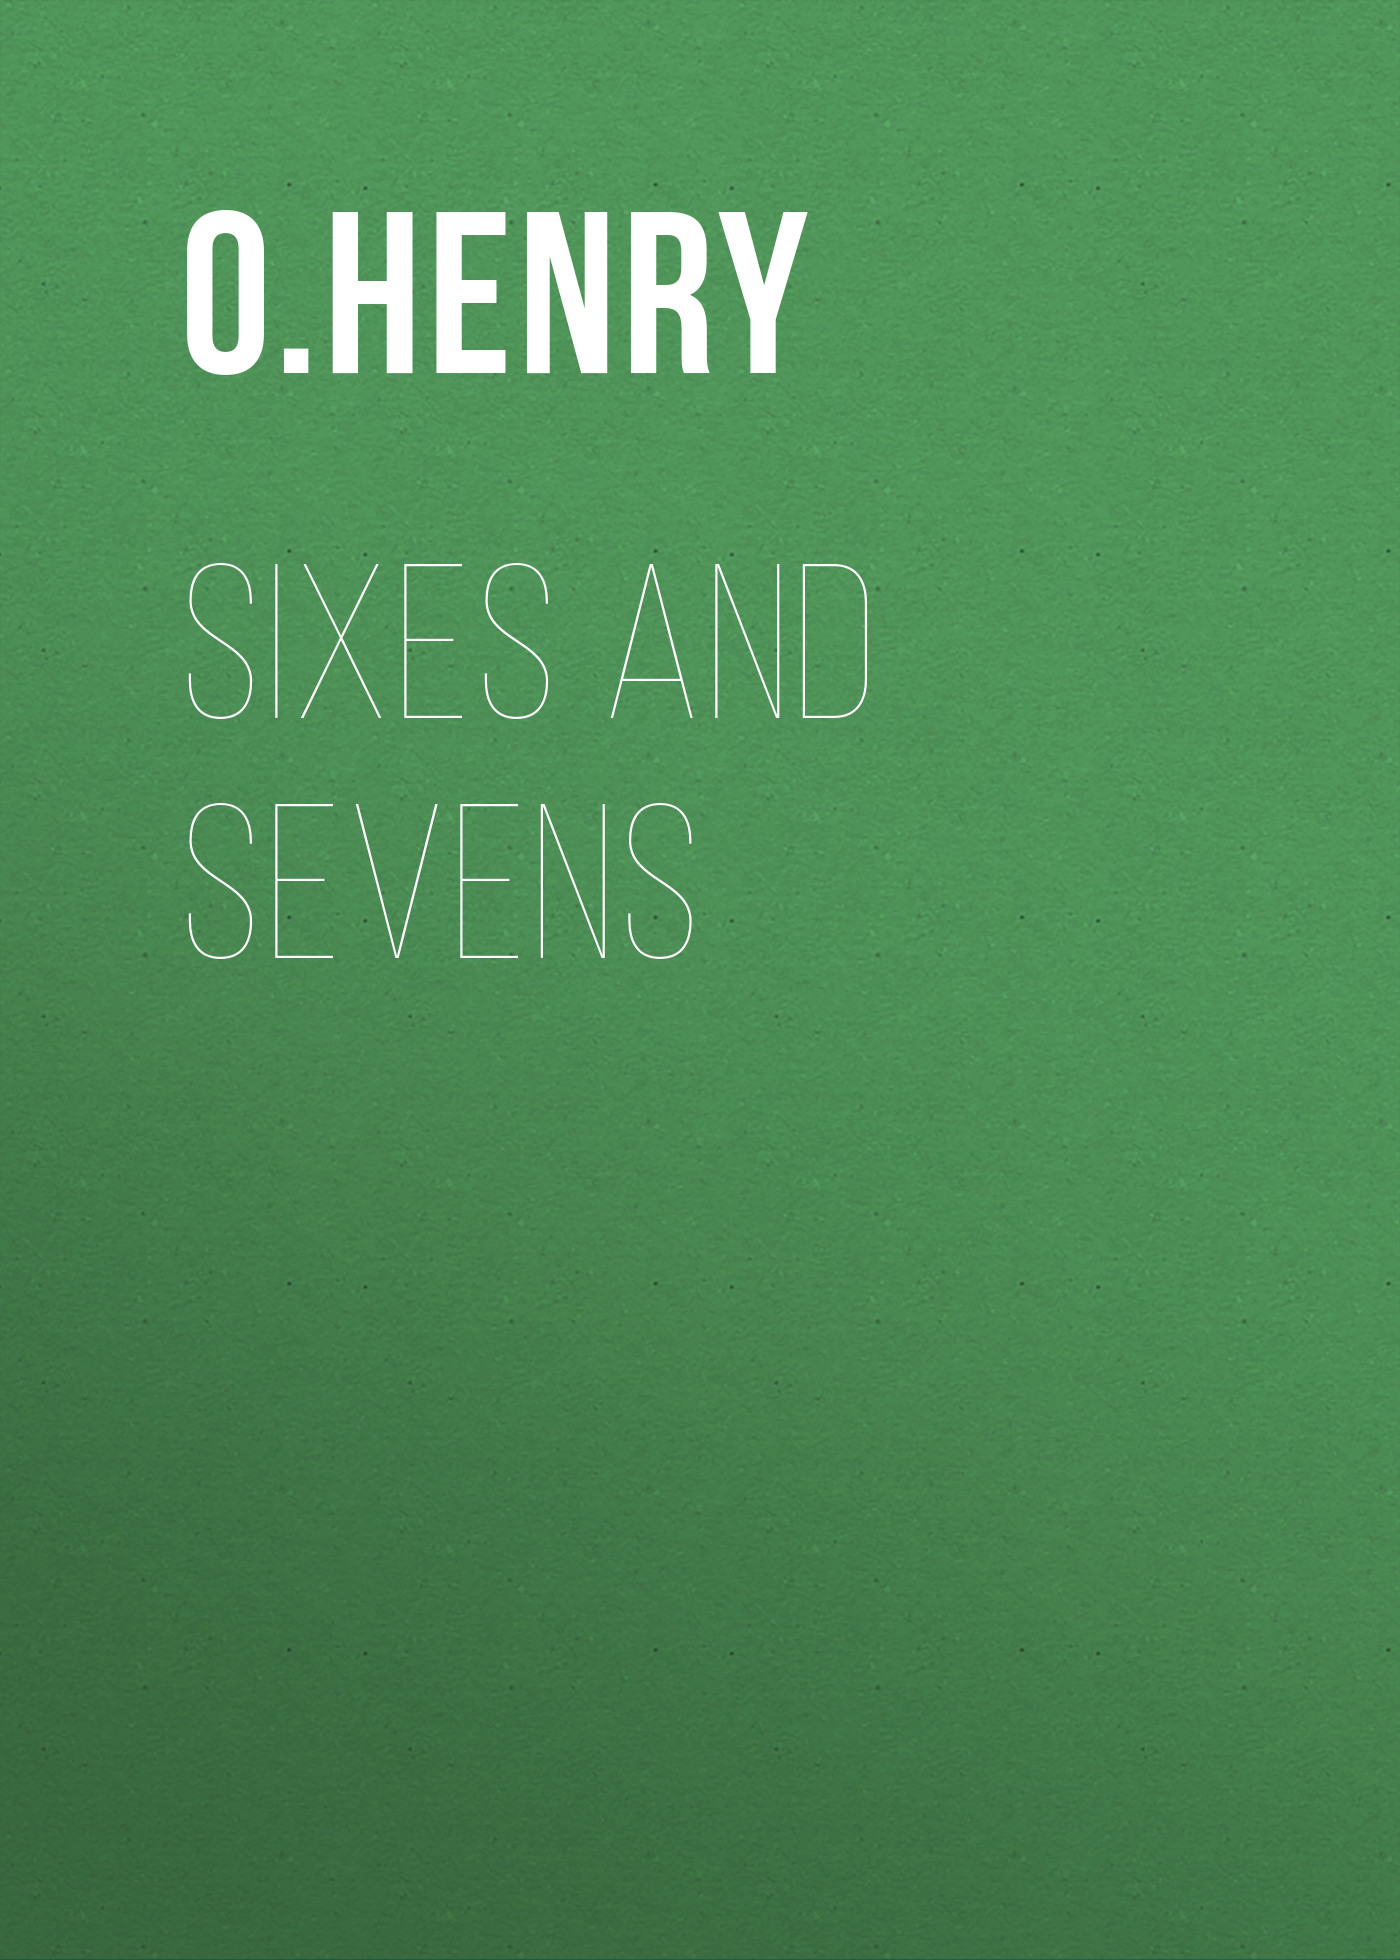 Книга Sixes and Sevens из серии , созданная O. Henry, может относится к жанру Литература 20 века, Зарубежная классика. Стоимость электронной книги Sixes and Sevens с идентификатором 25560108 составляет 0 руб.